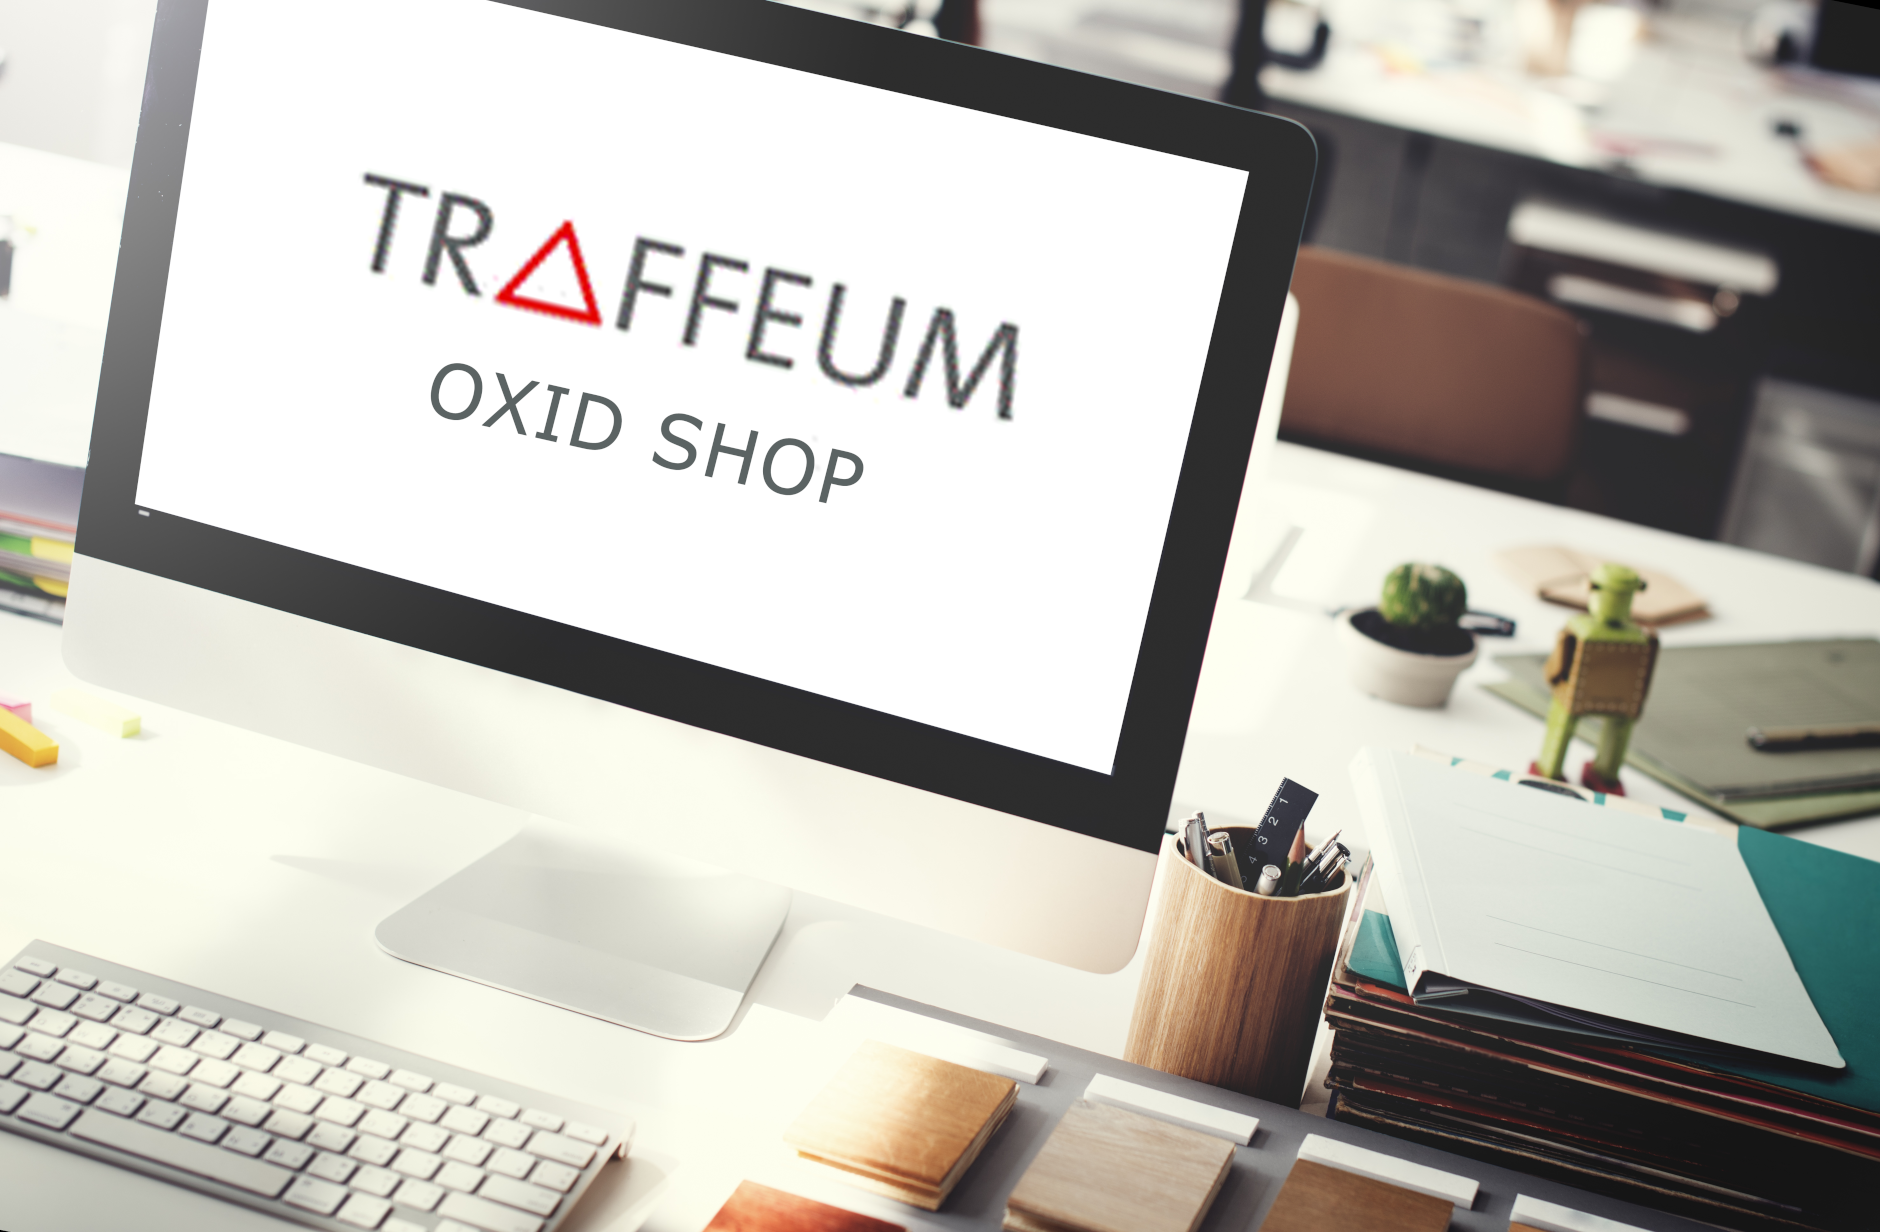 Bild zum Projekt OXID EShop für Traffeum